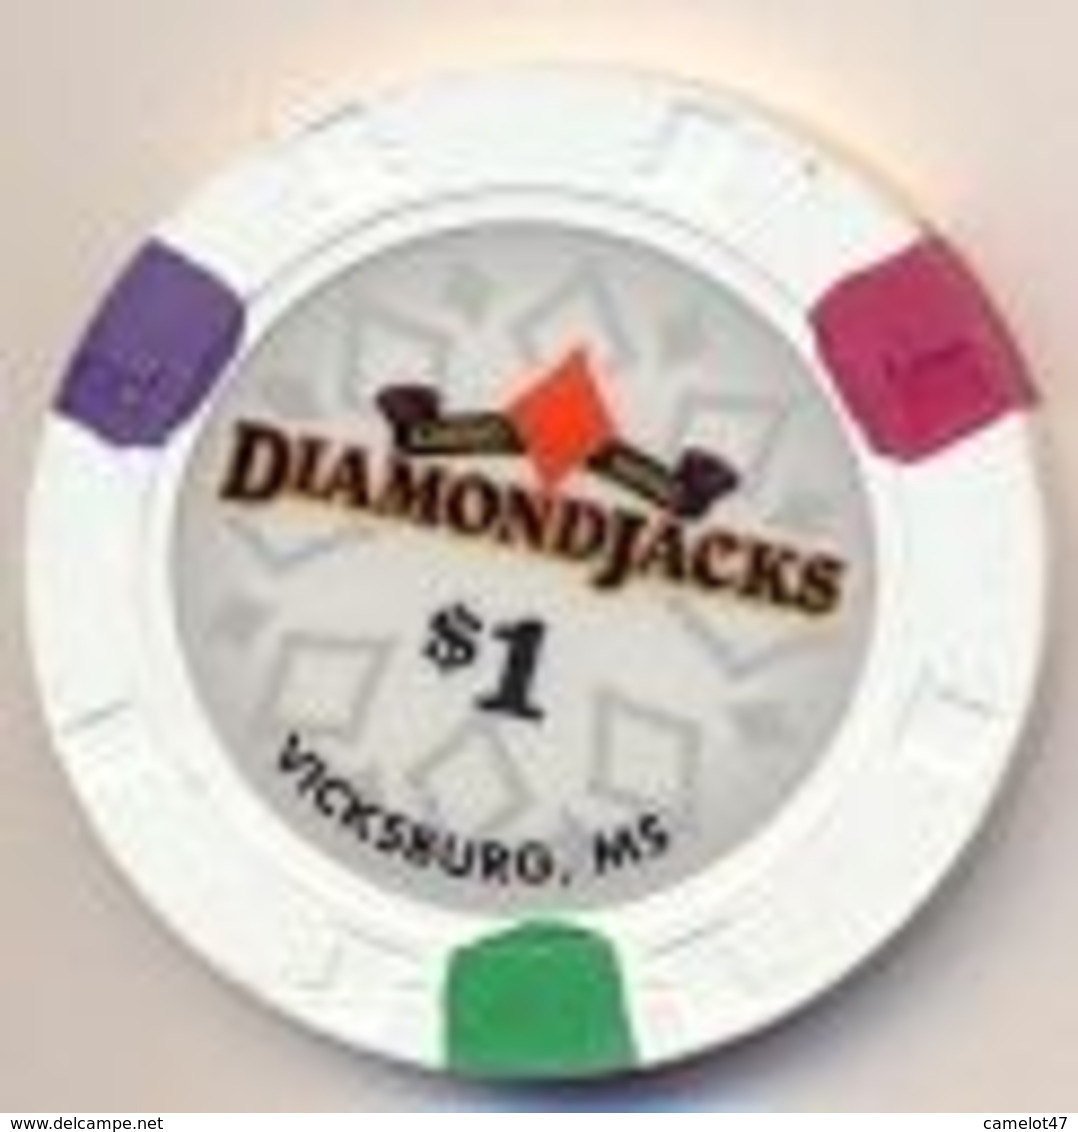 Diamond Jacks Casino,Vicksburg, MS, U.S.A. $1 Chip, Used Condition, # Diamondjacks-1 - Casino